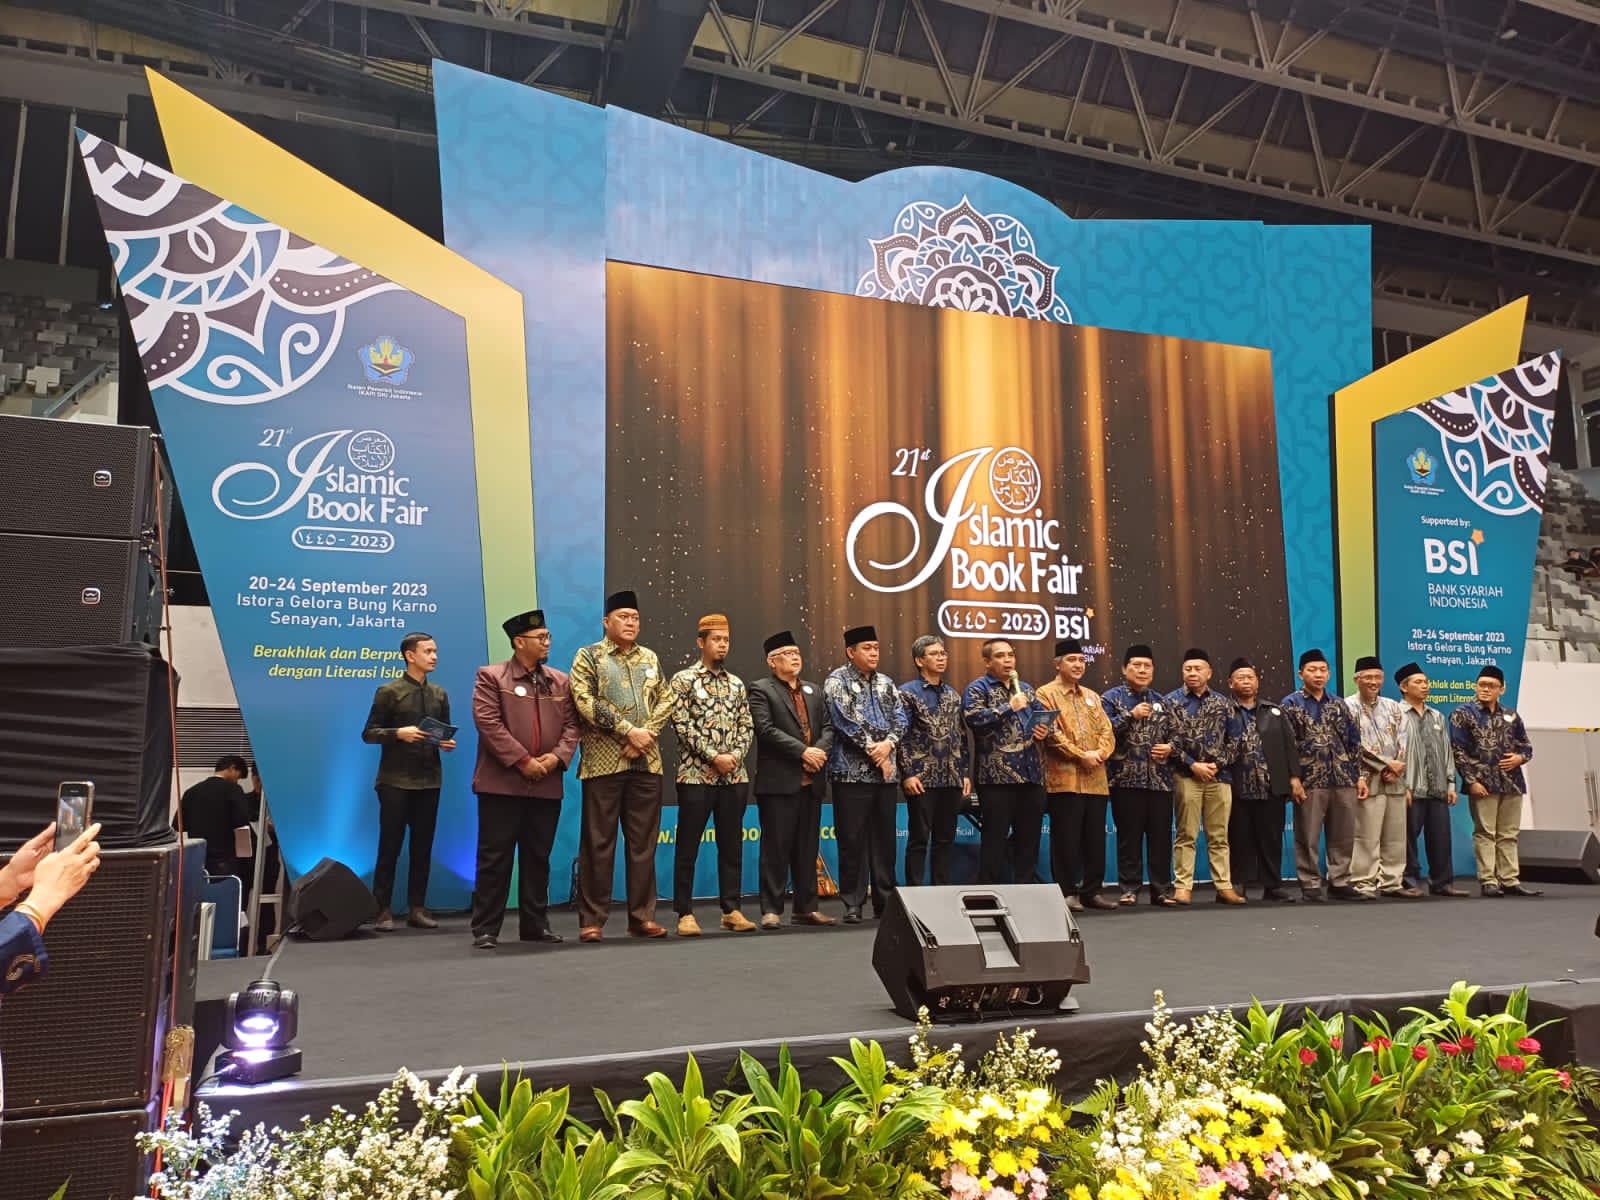 اقامة معرض للكتاب الإسلامي بإندونيسيا